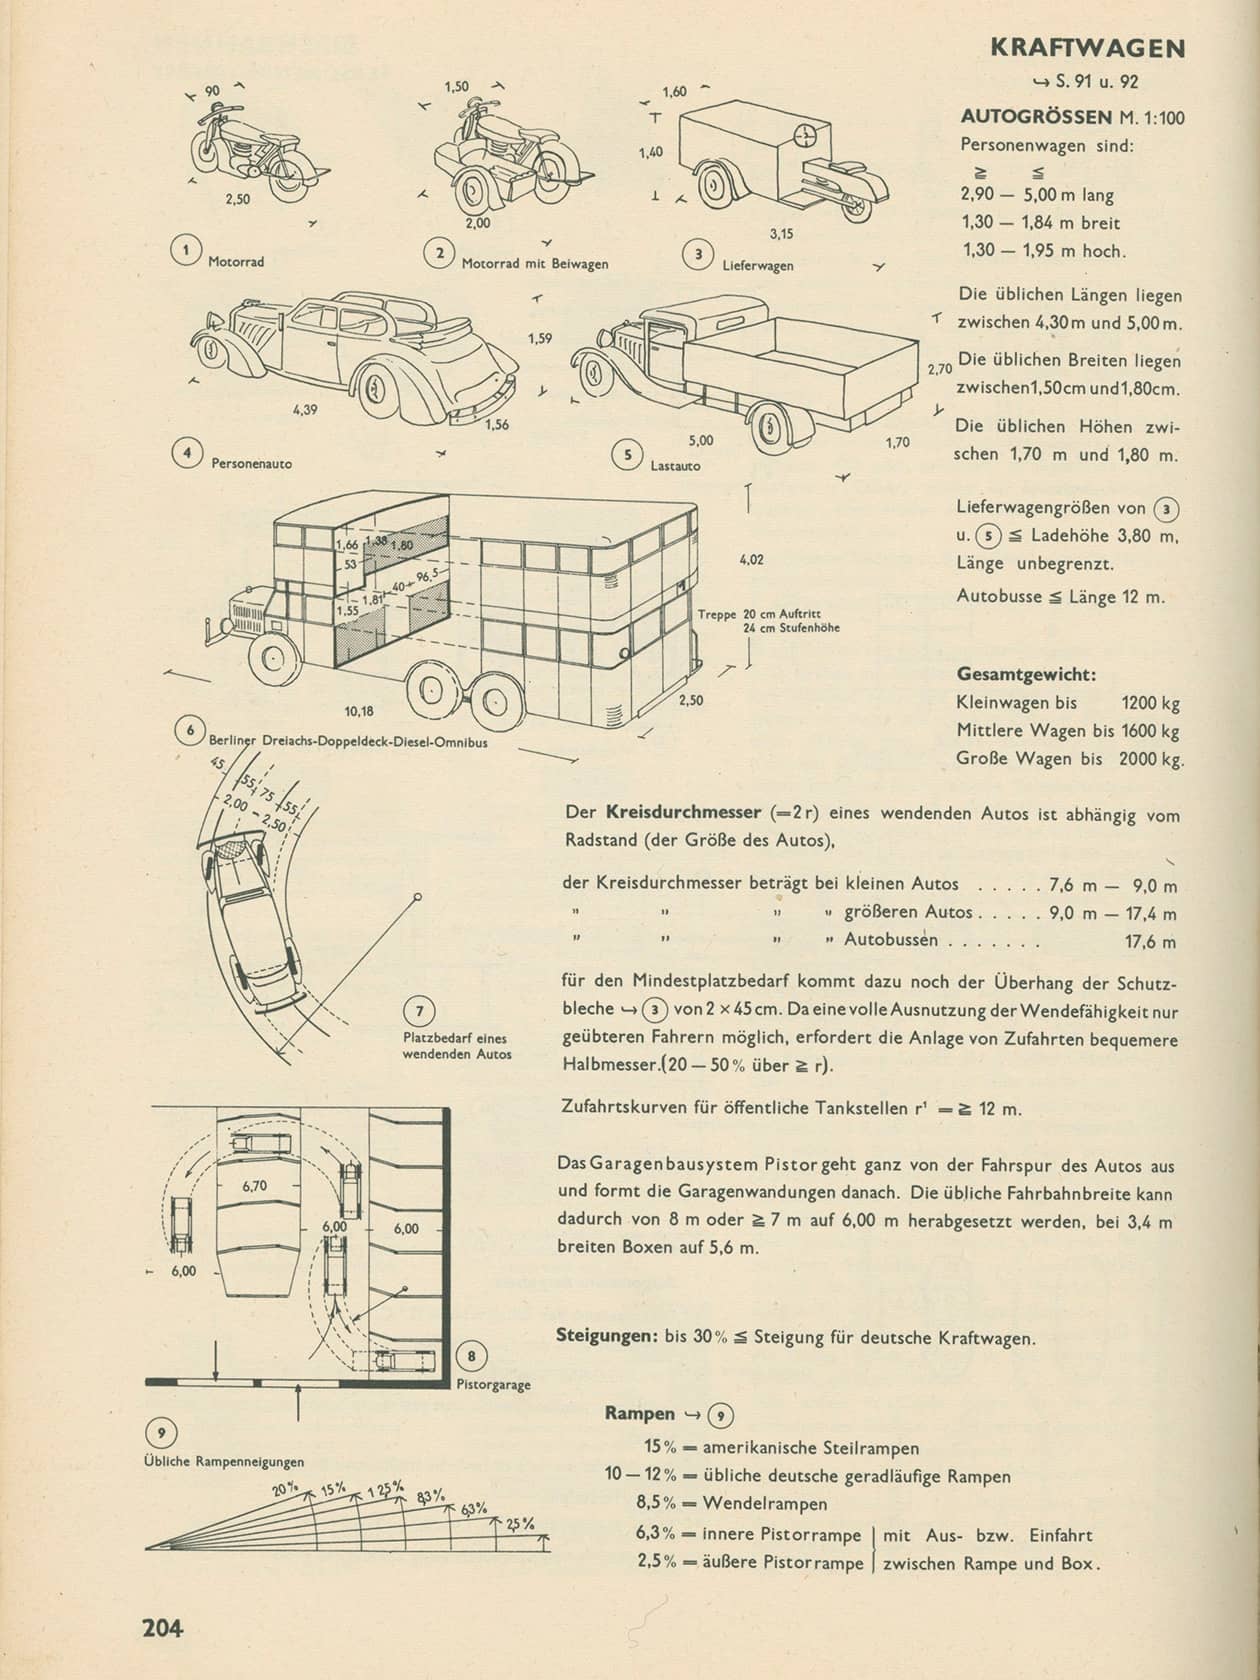 First edition of Bauentwurfslehre of Ernst Neufert , 1936, “Cars”